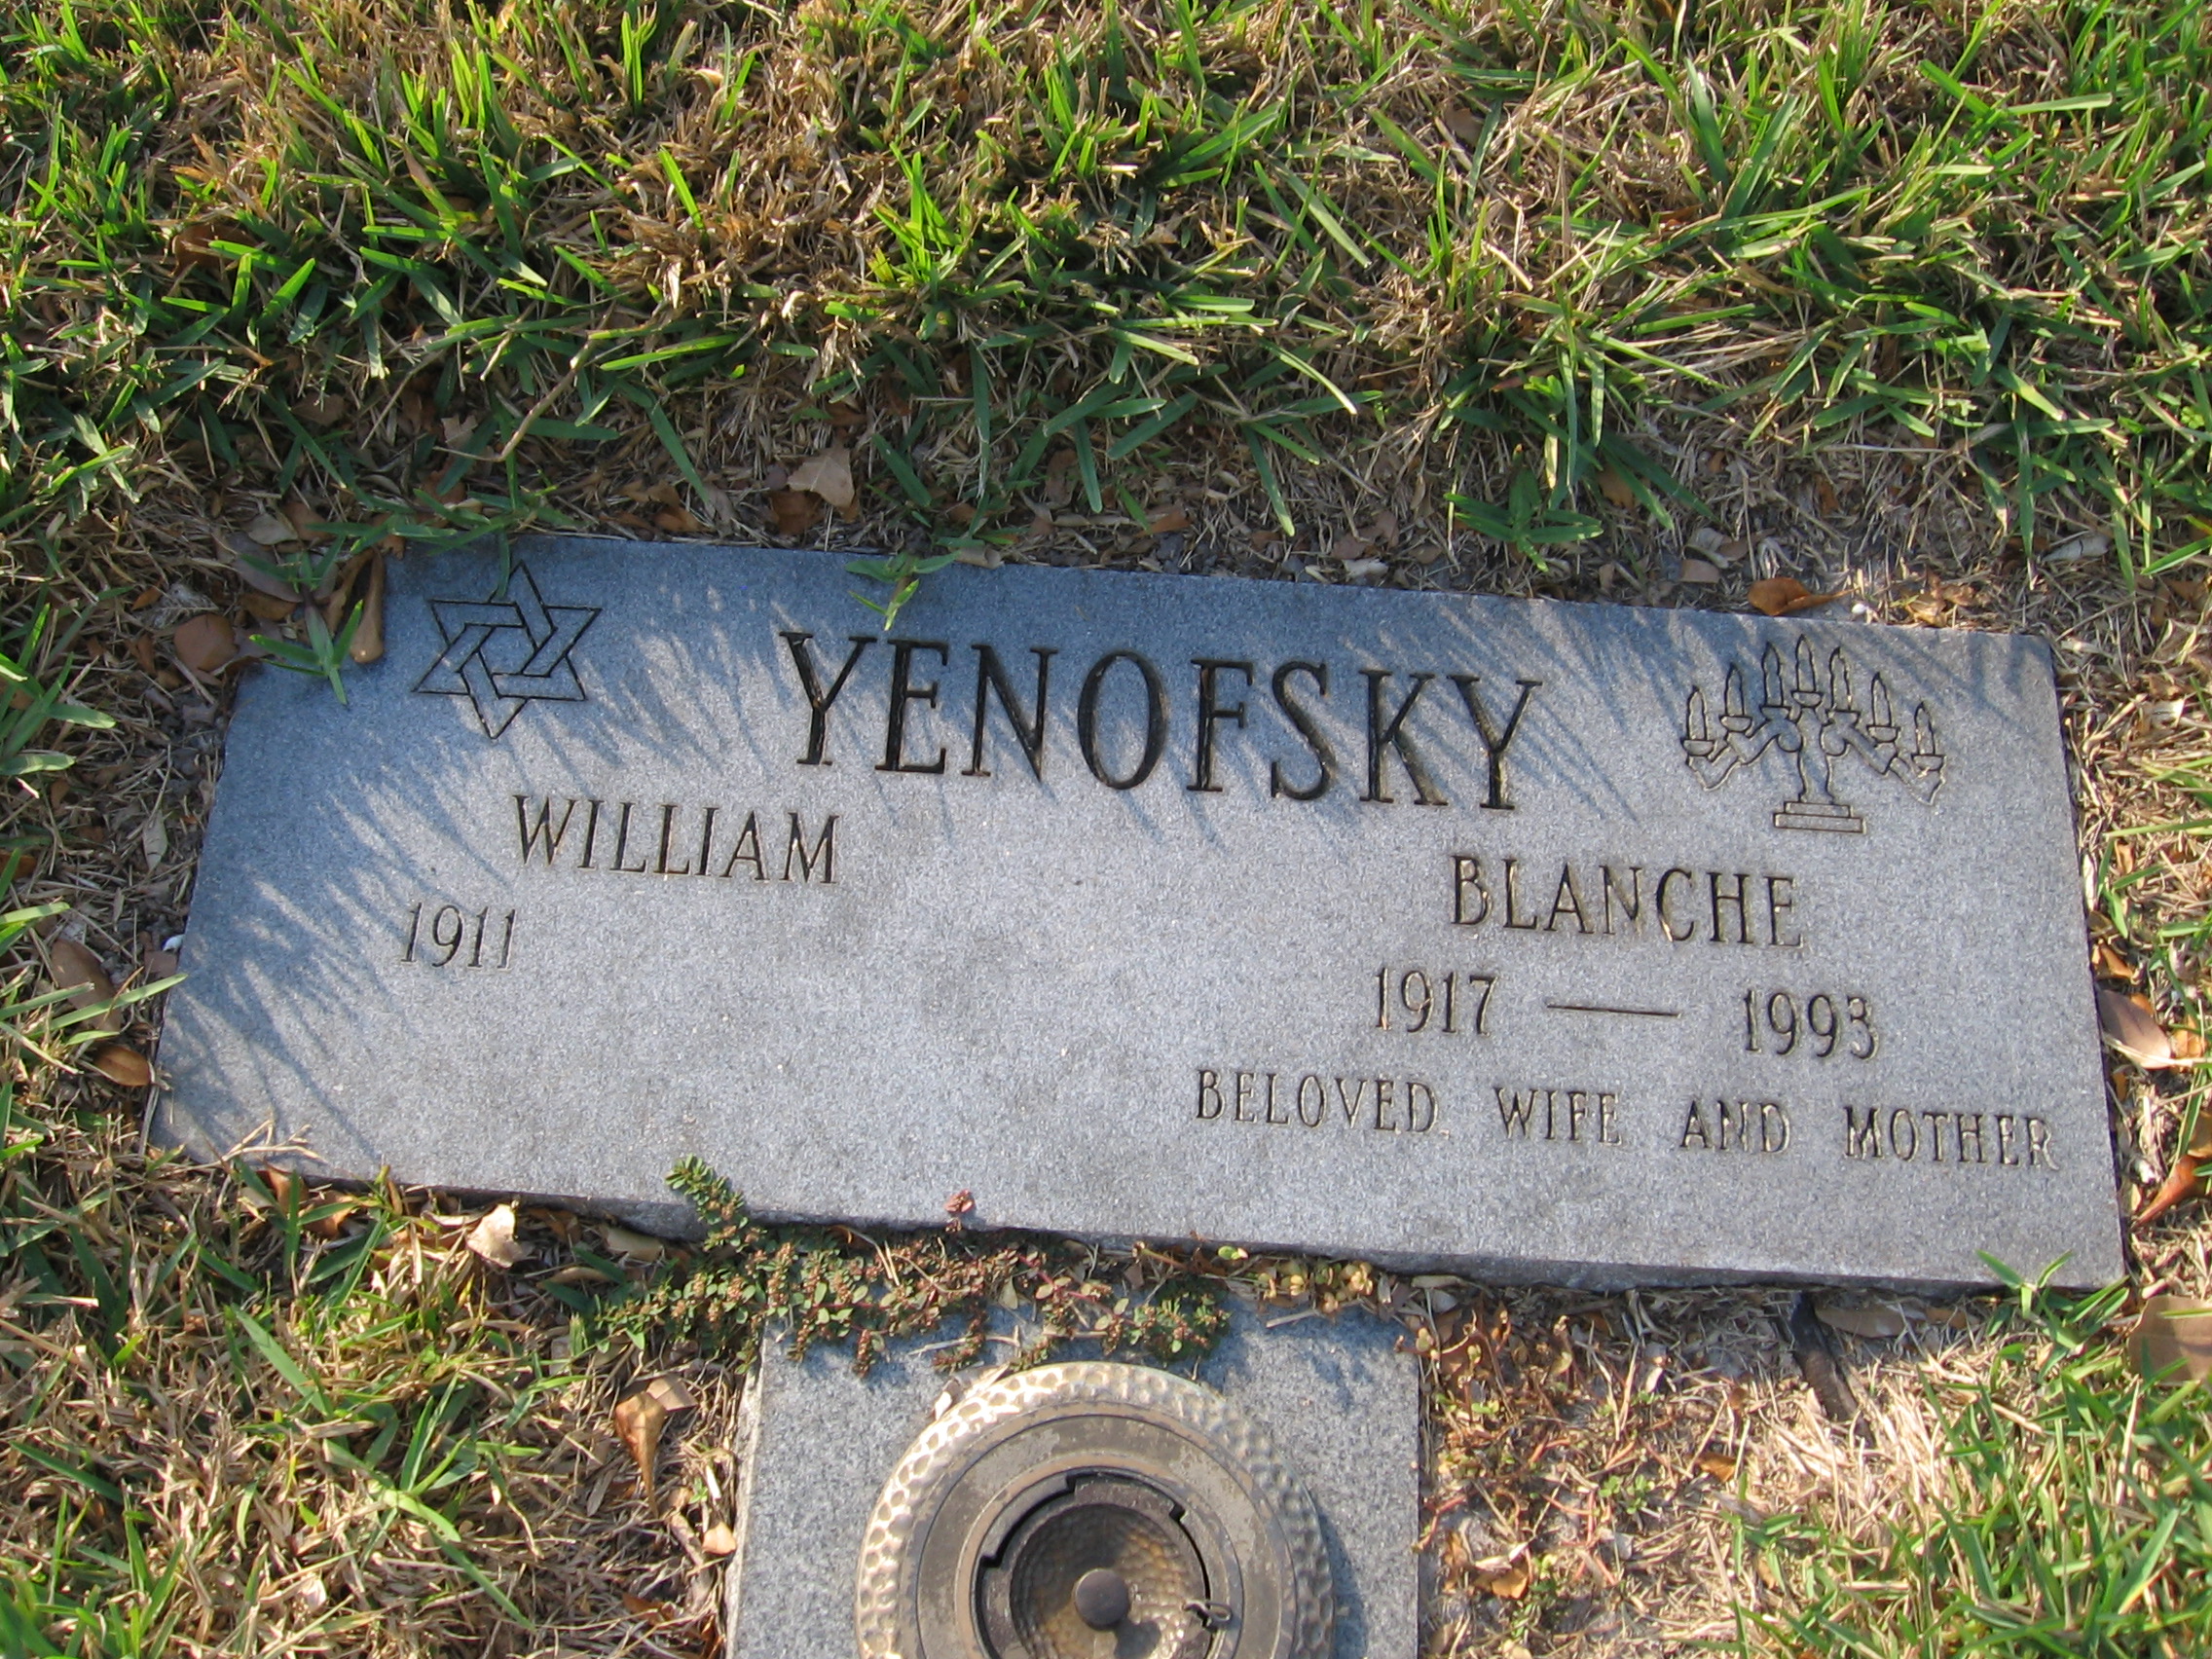 Blanche Yenofsky